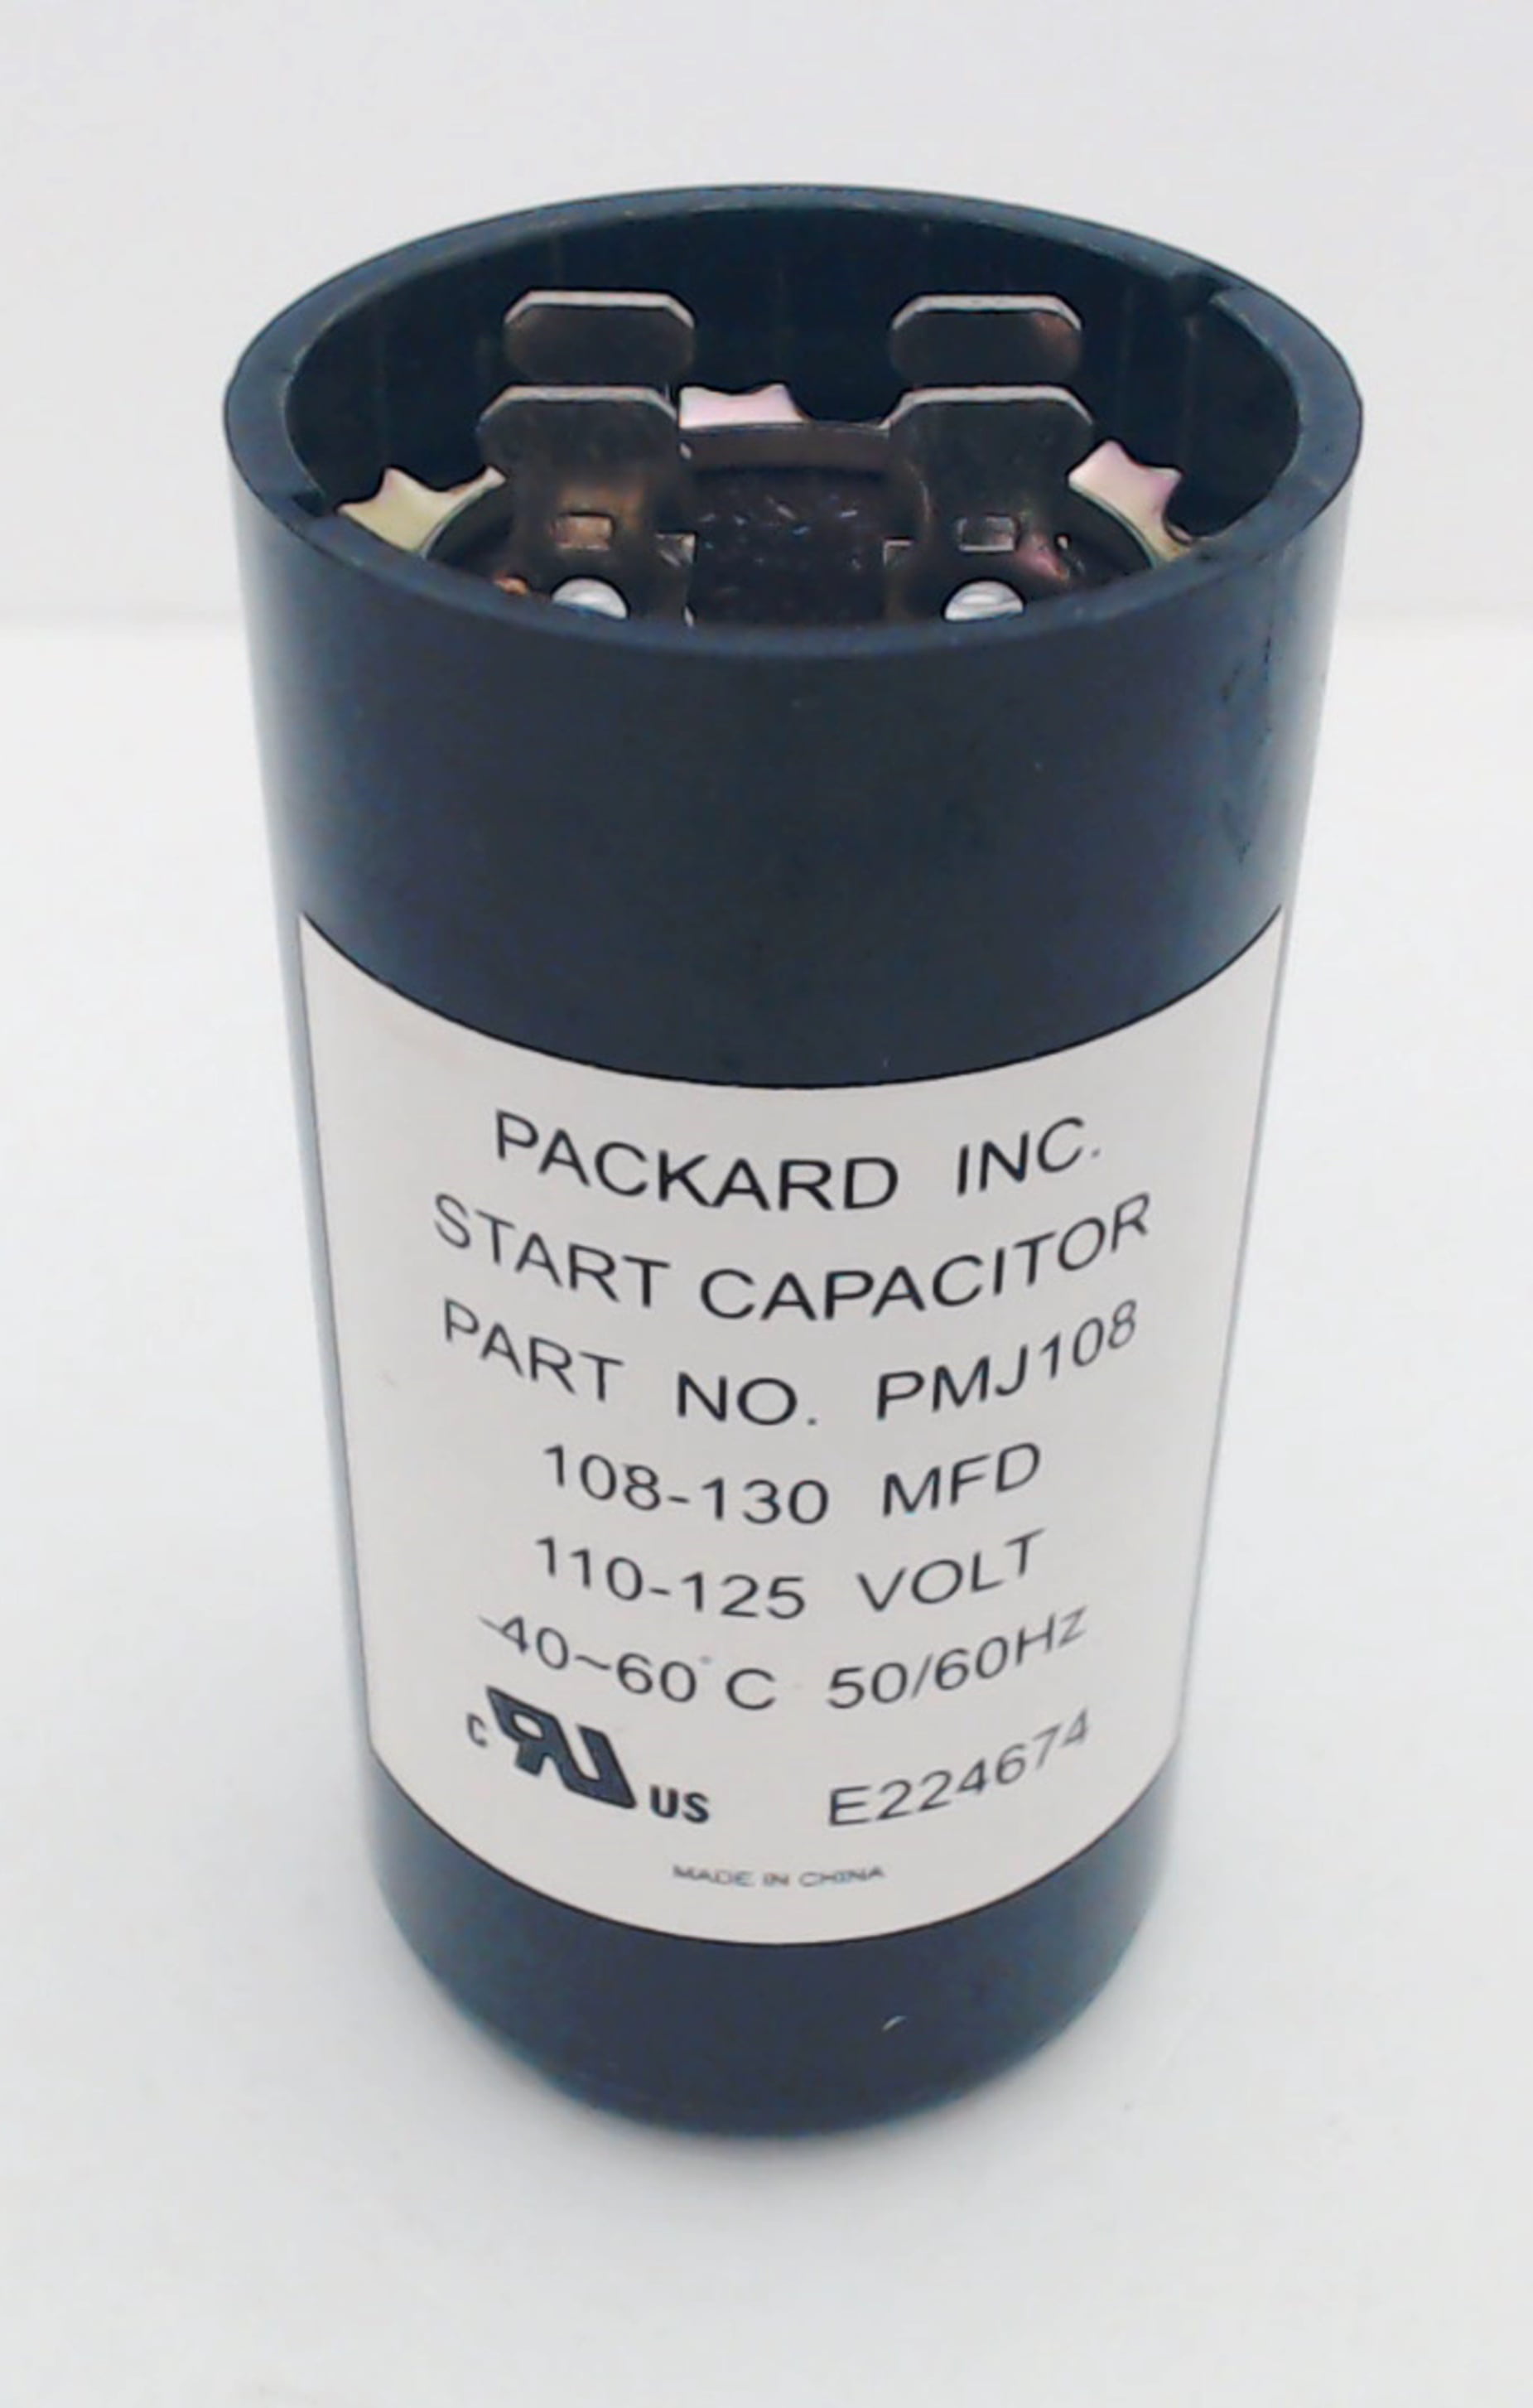 Packard Start Capacitor 108-130 Mfd. PMJ108-1 Round 110-125 Volt 